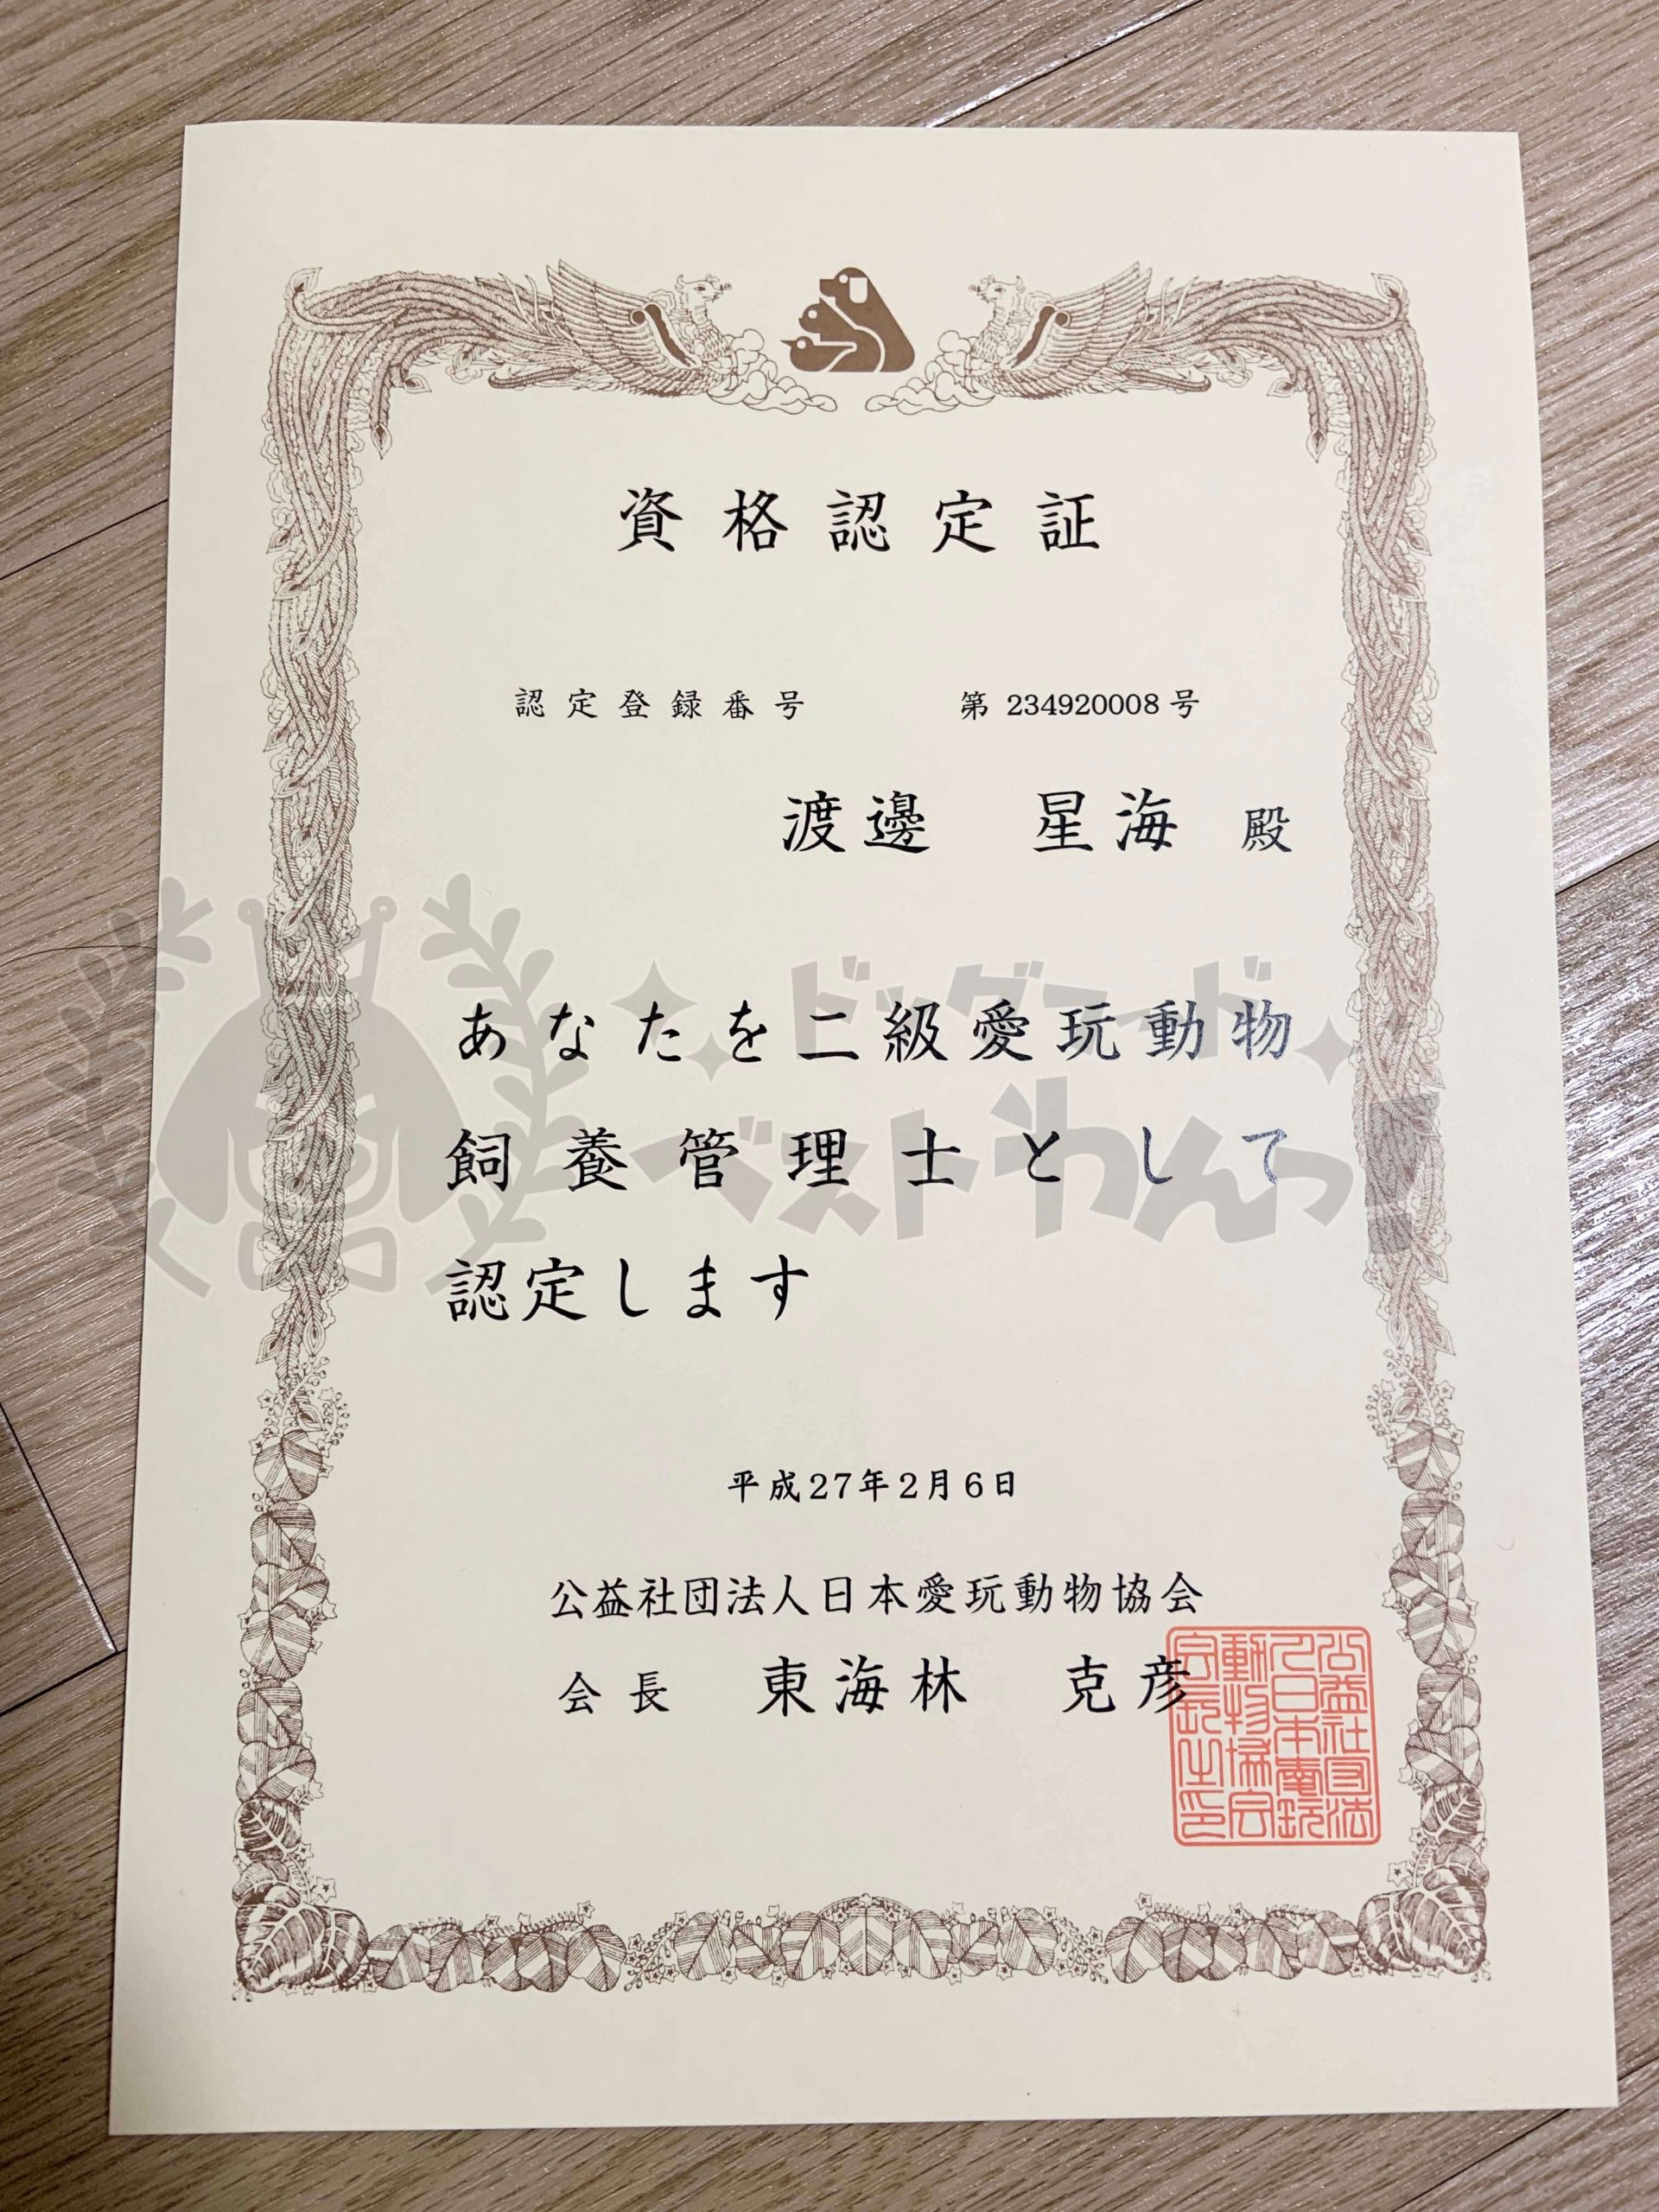 渡邊星海の日本愛玩動物協会二級愛玩動物飼養管理士資格認定証